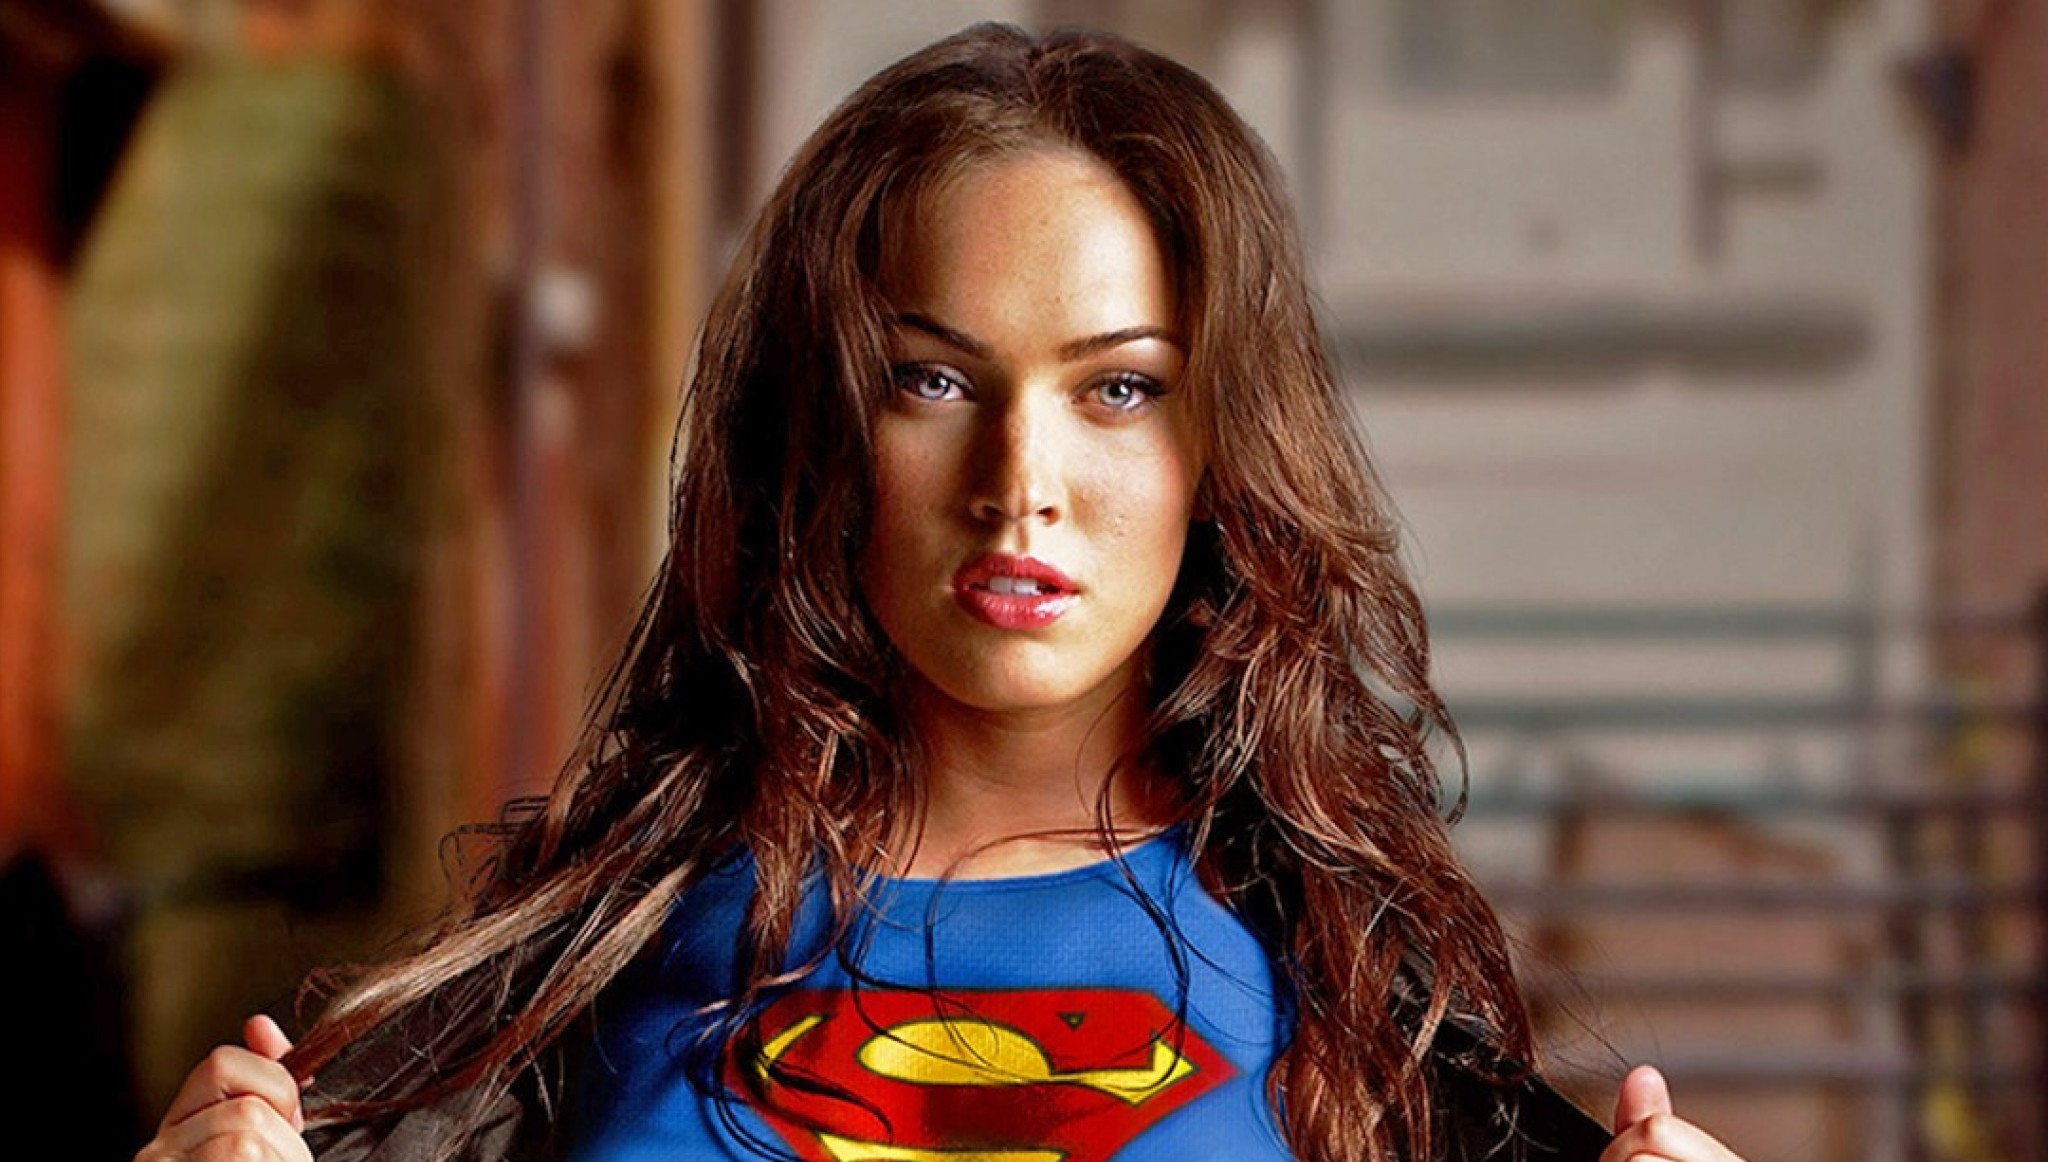 47+] Megan Fox Supergirl Wallpaper - WallpaperSafari